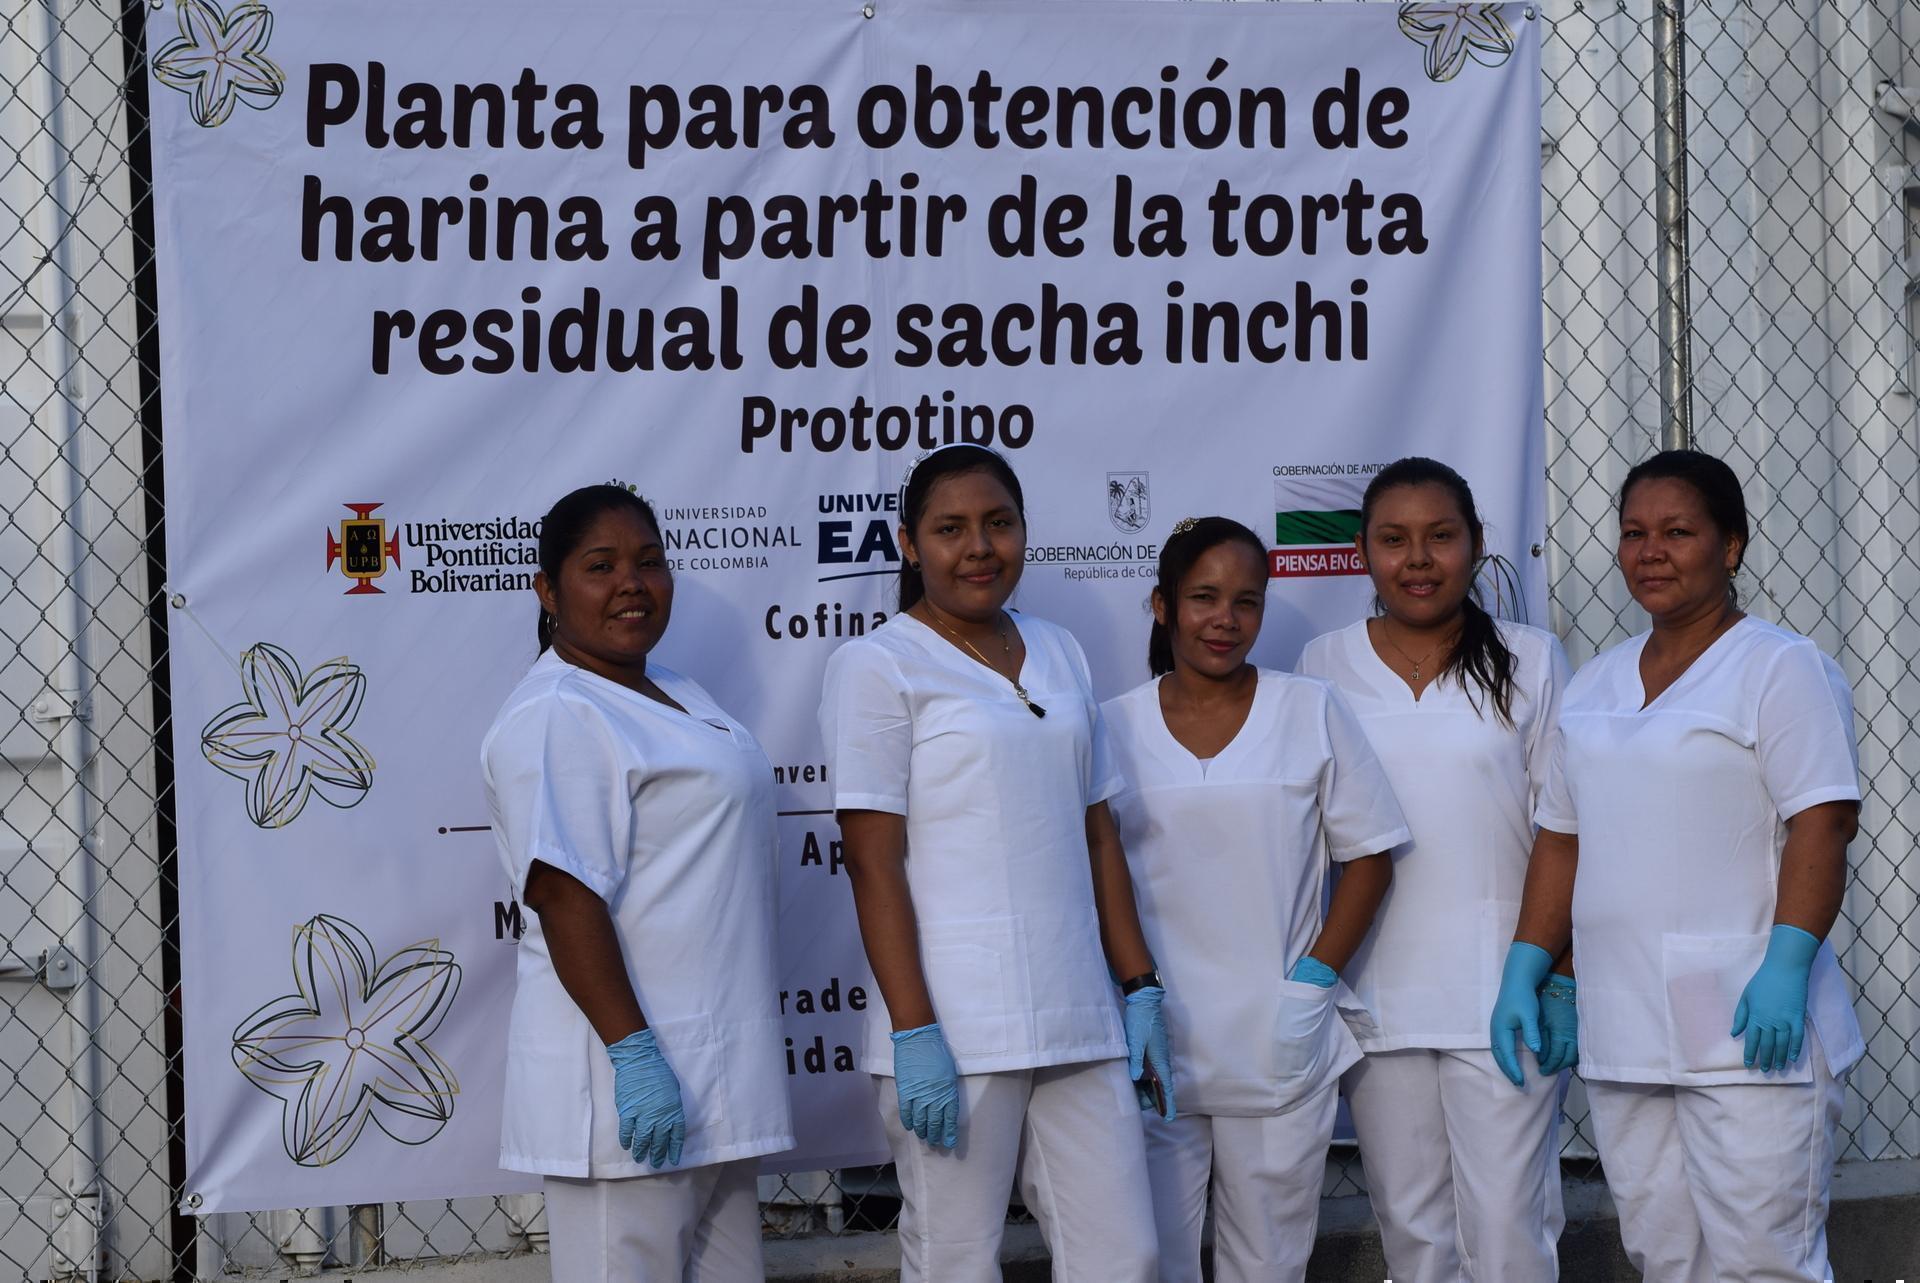 mujeres con uniforme y guantes posando delante de poster de la planta